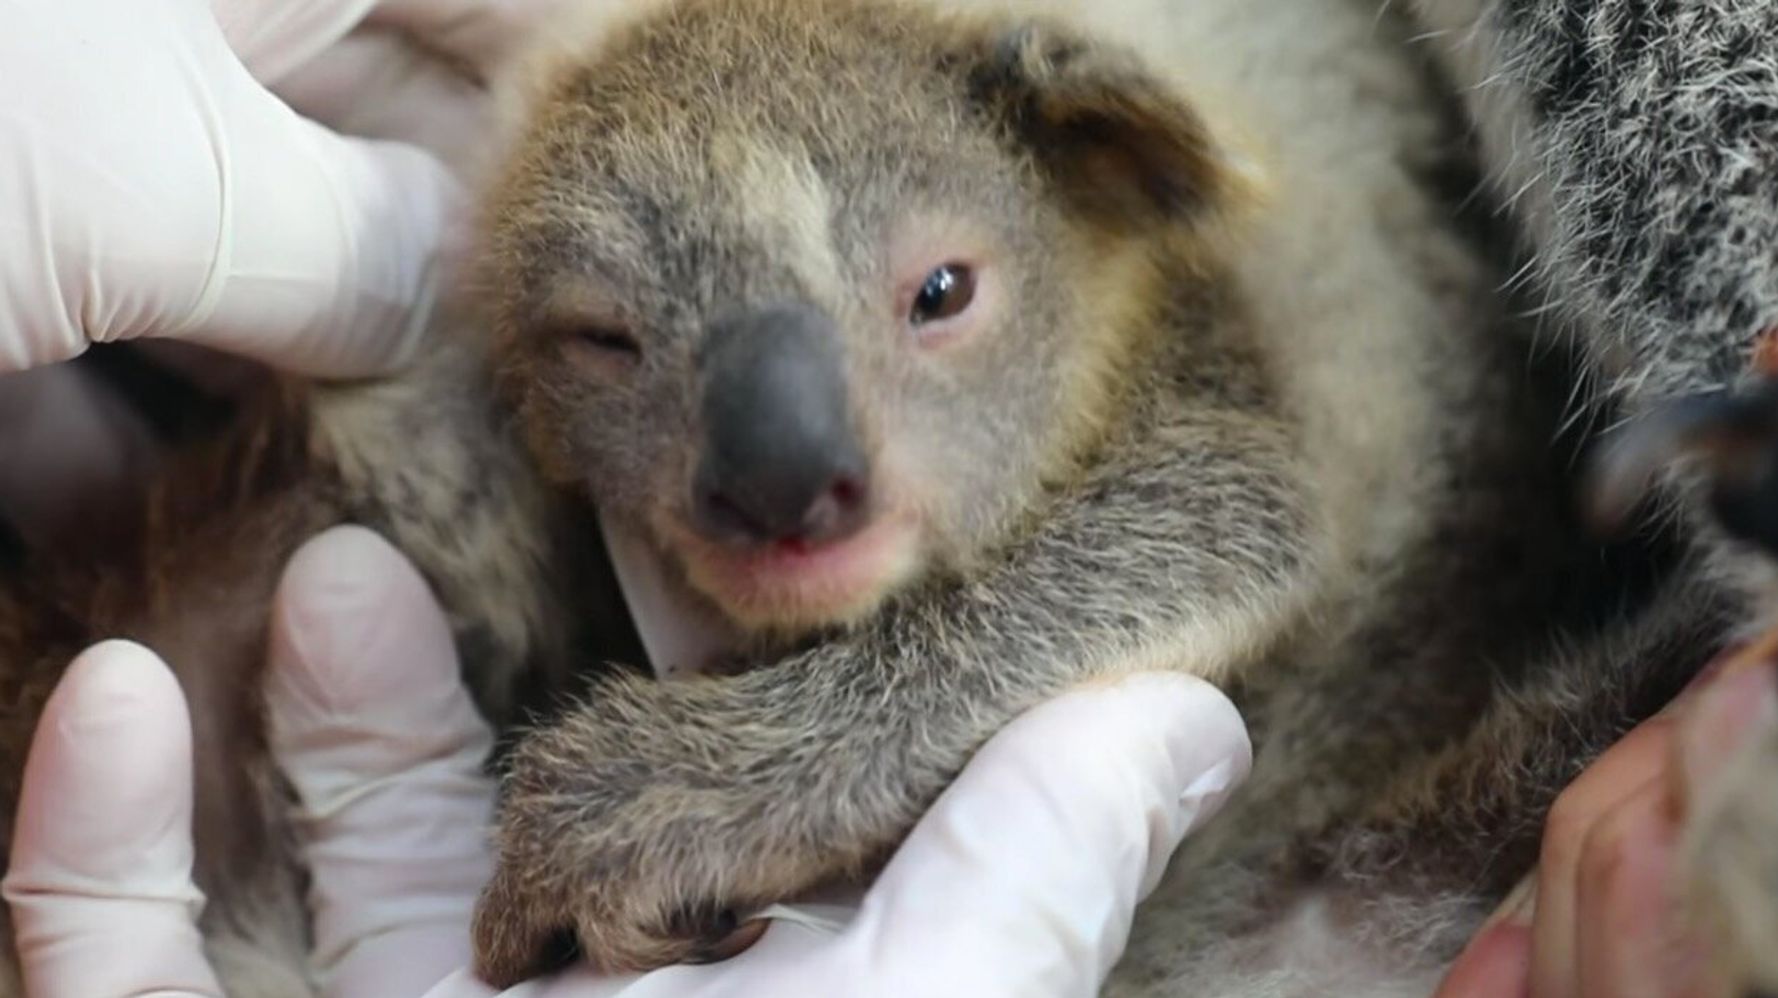 コアラの赤ちゃん誕生 森林火災の被害を受けた動物たちの 希望の証しに 動画 ハフポスト